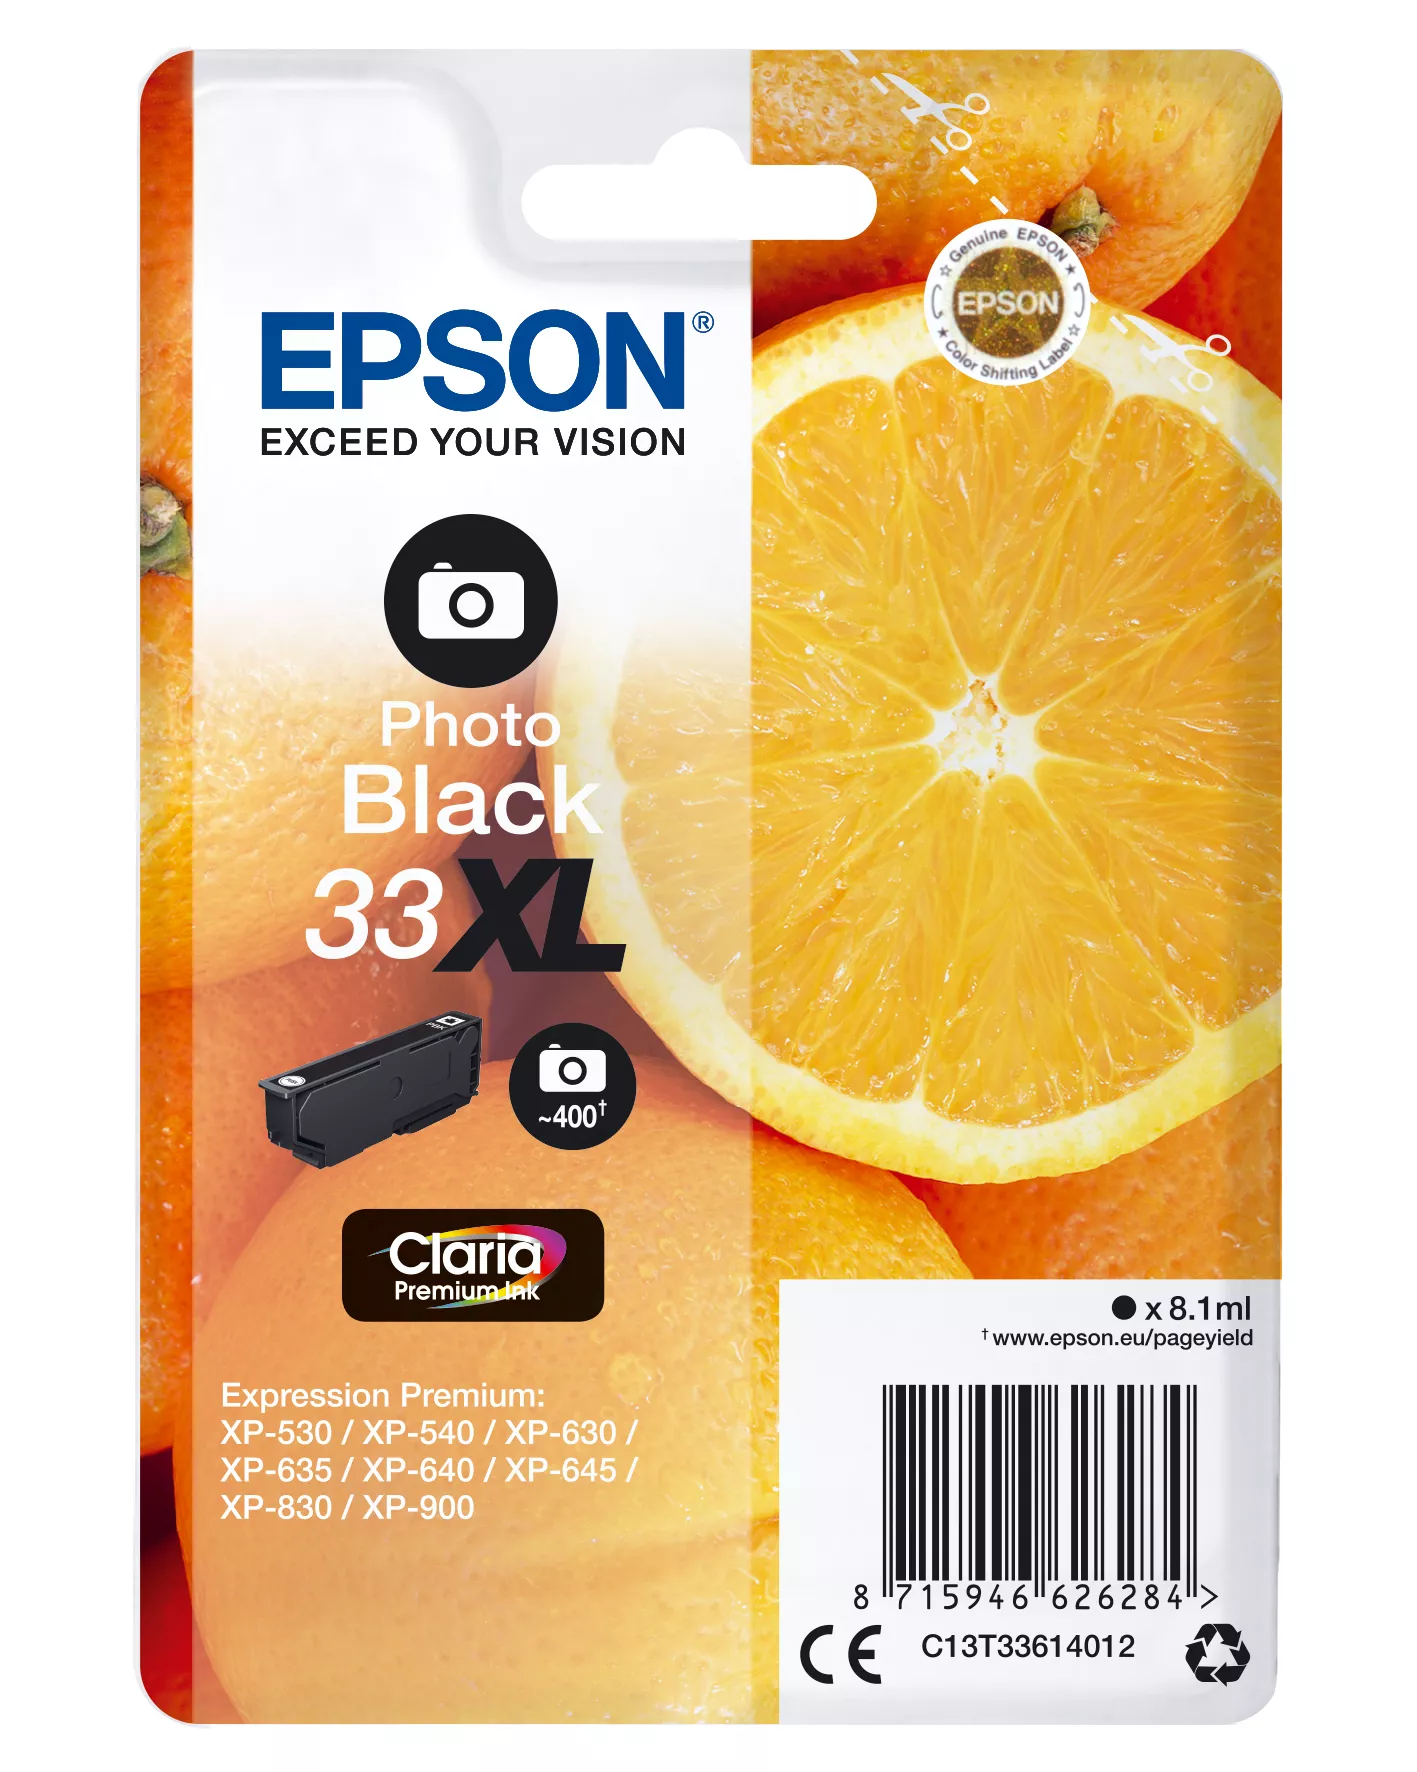 Achat Cartouches d'encre EPSON Cartouche Oranges Encre Claria Premium Noir Photo sur hello RSE